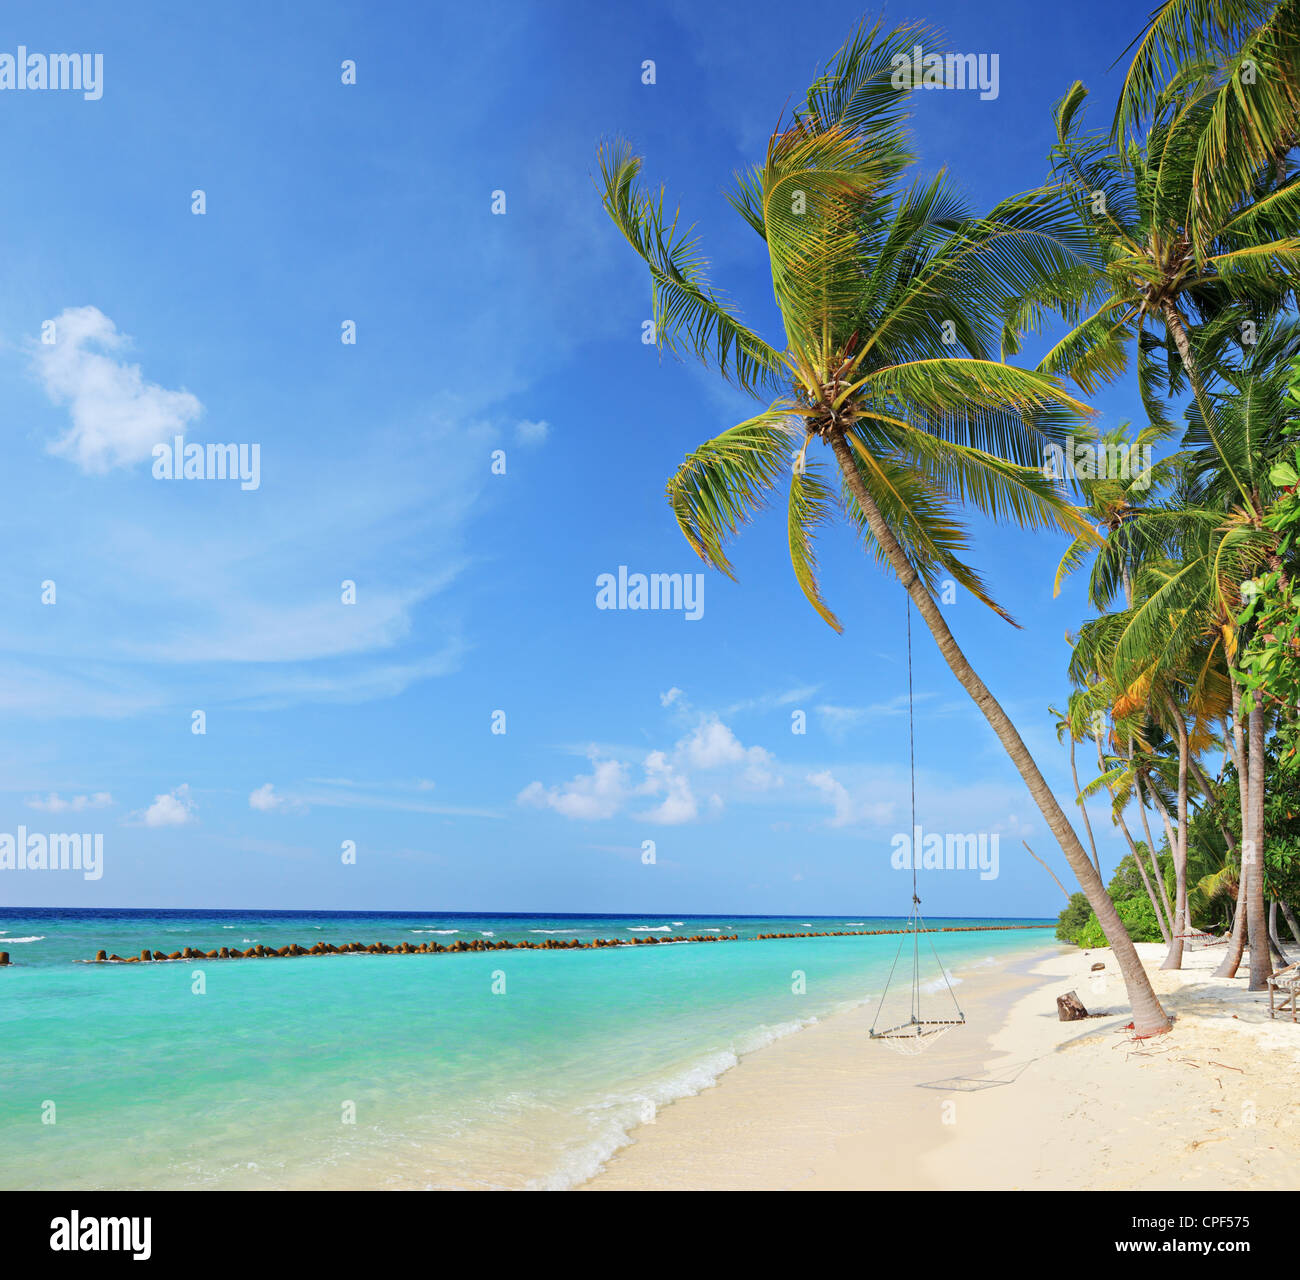 Scena di spiaggia con uno swing su un albero di palma in una giornata di sole sulla isola di Kuredu Maldive Lhaviyani atoll Foto Stock